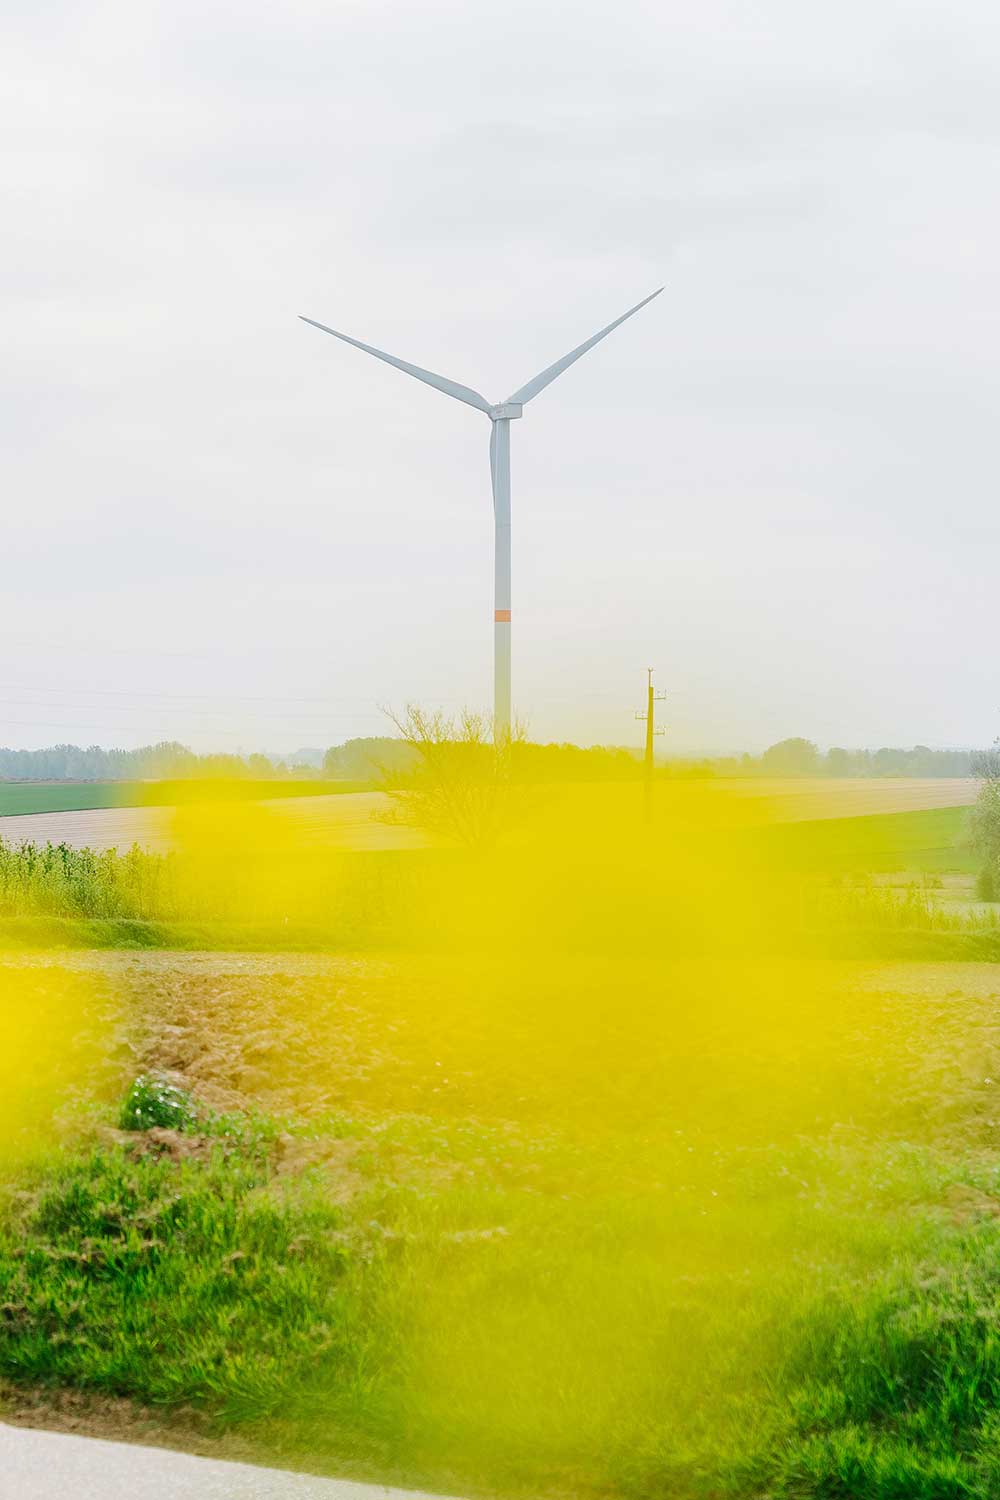 A propos de Luminus - Climat : Le Belge plaide pour une relance verte de l'économie et la poursuite du développement des énergies renouvelables.